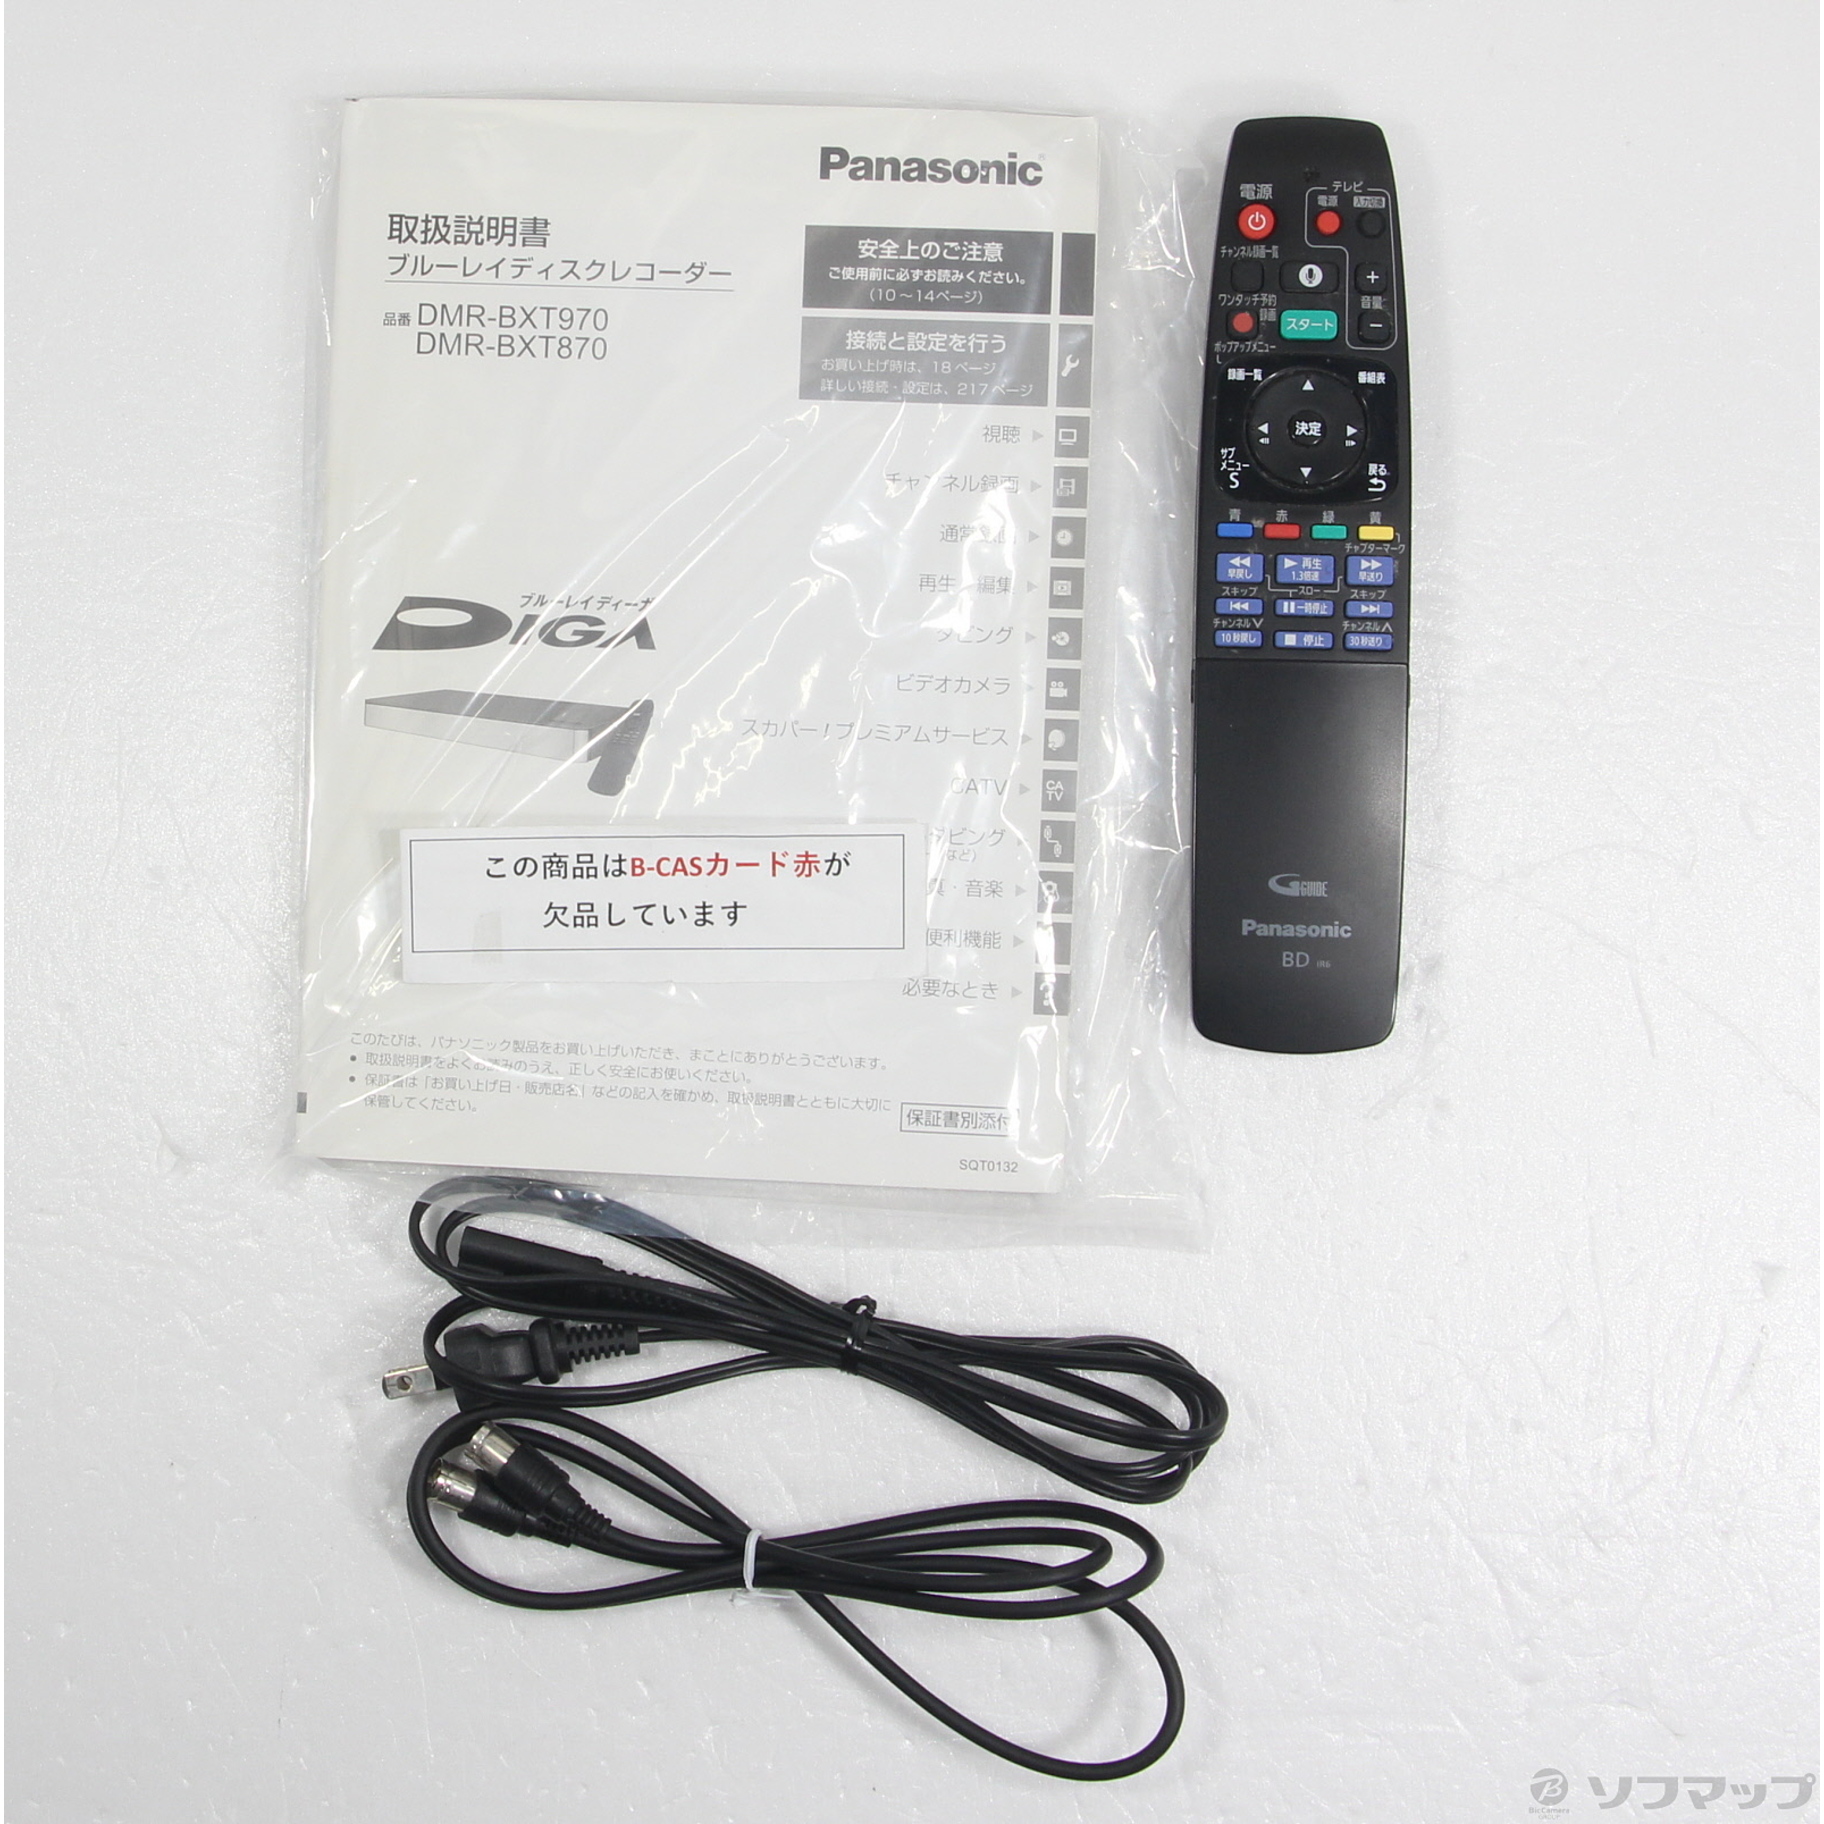 Panasonic 3TB 全自動録画 ブルーレイレコーダー DMR-2X301 - DVDレコーダー